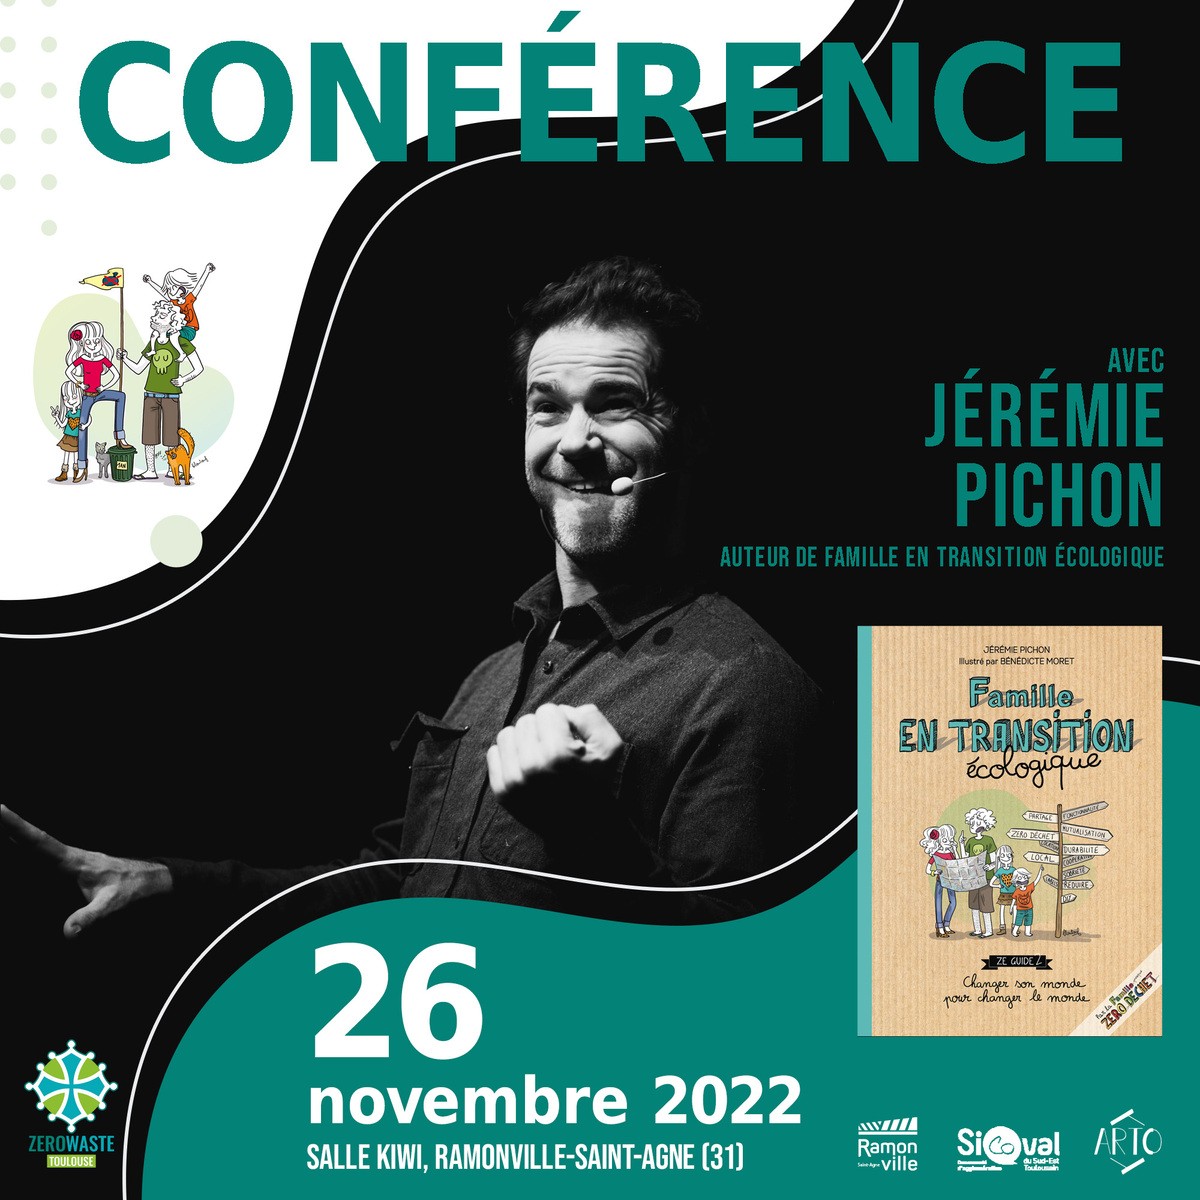 Zero Waste Toulouse, le Sicoval Arto et la mairie de Ramonville proposent : Conférence de Jérémie Pichon